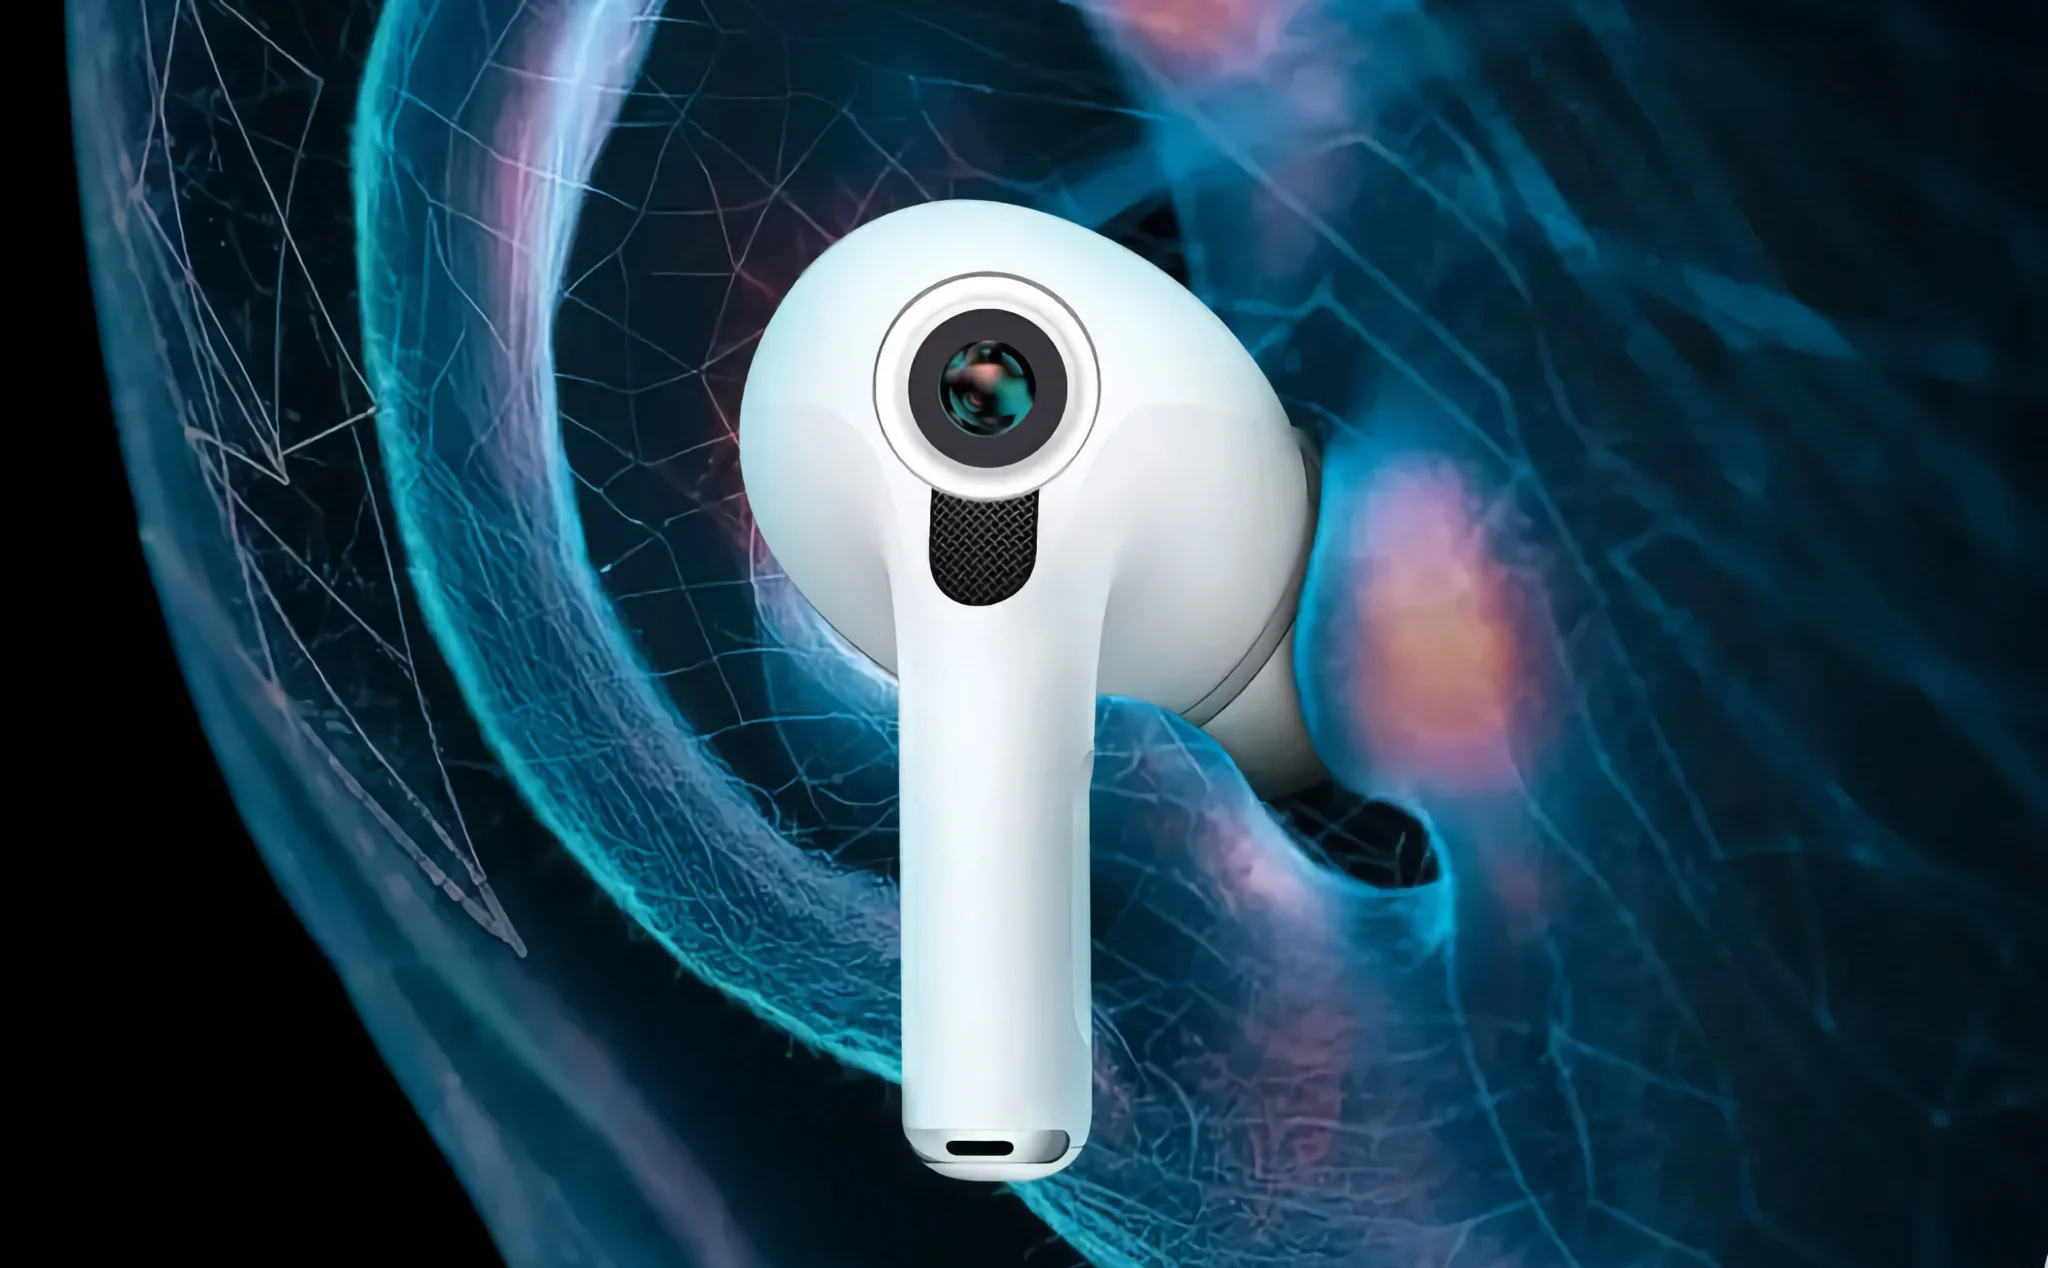 Apple dự kiến sẽ ra mắt AirPods mới tích hợp camera hồng ngoại để sử dụng với Vision Pro